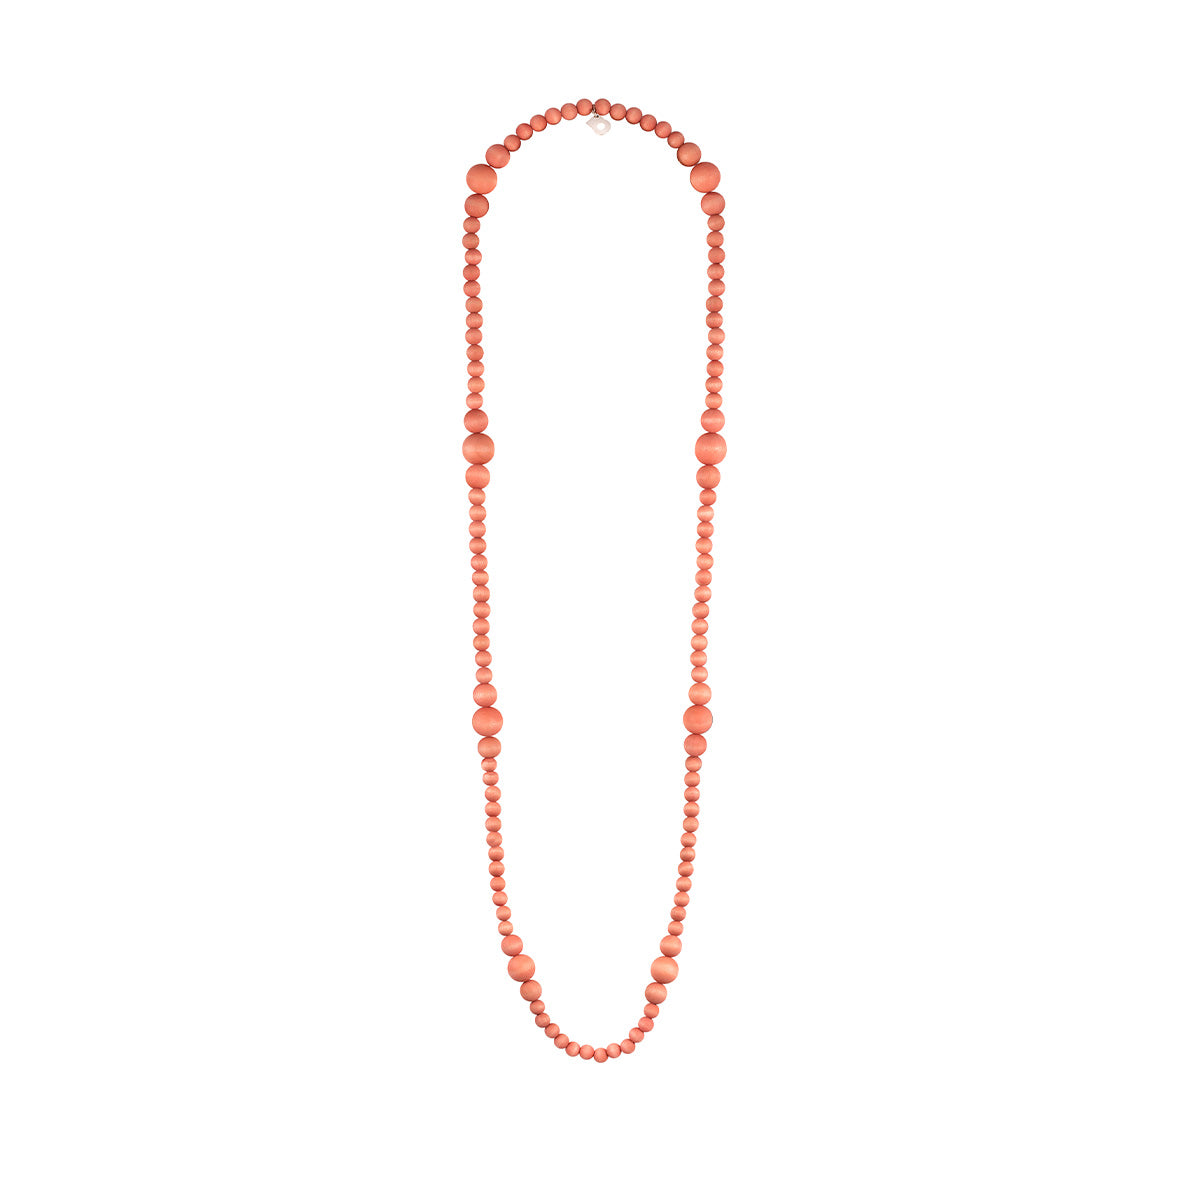 Tuulentie necklace, orange